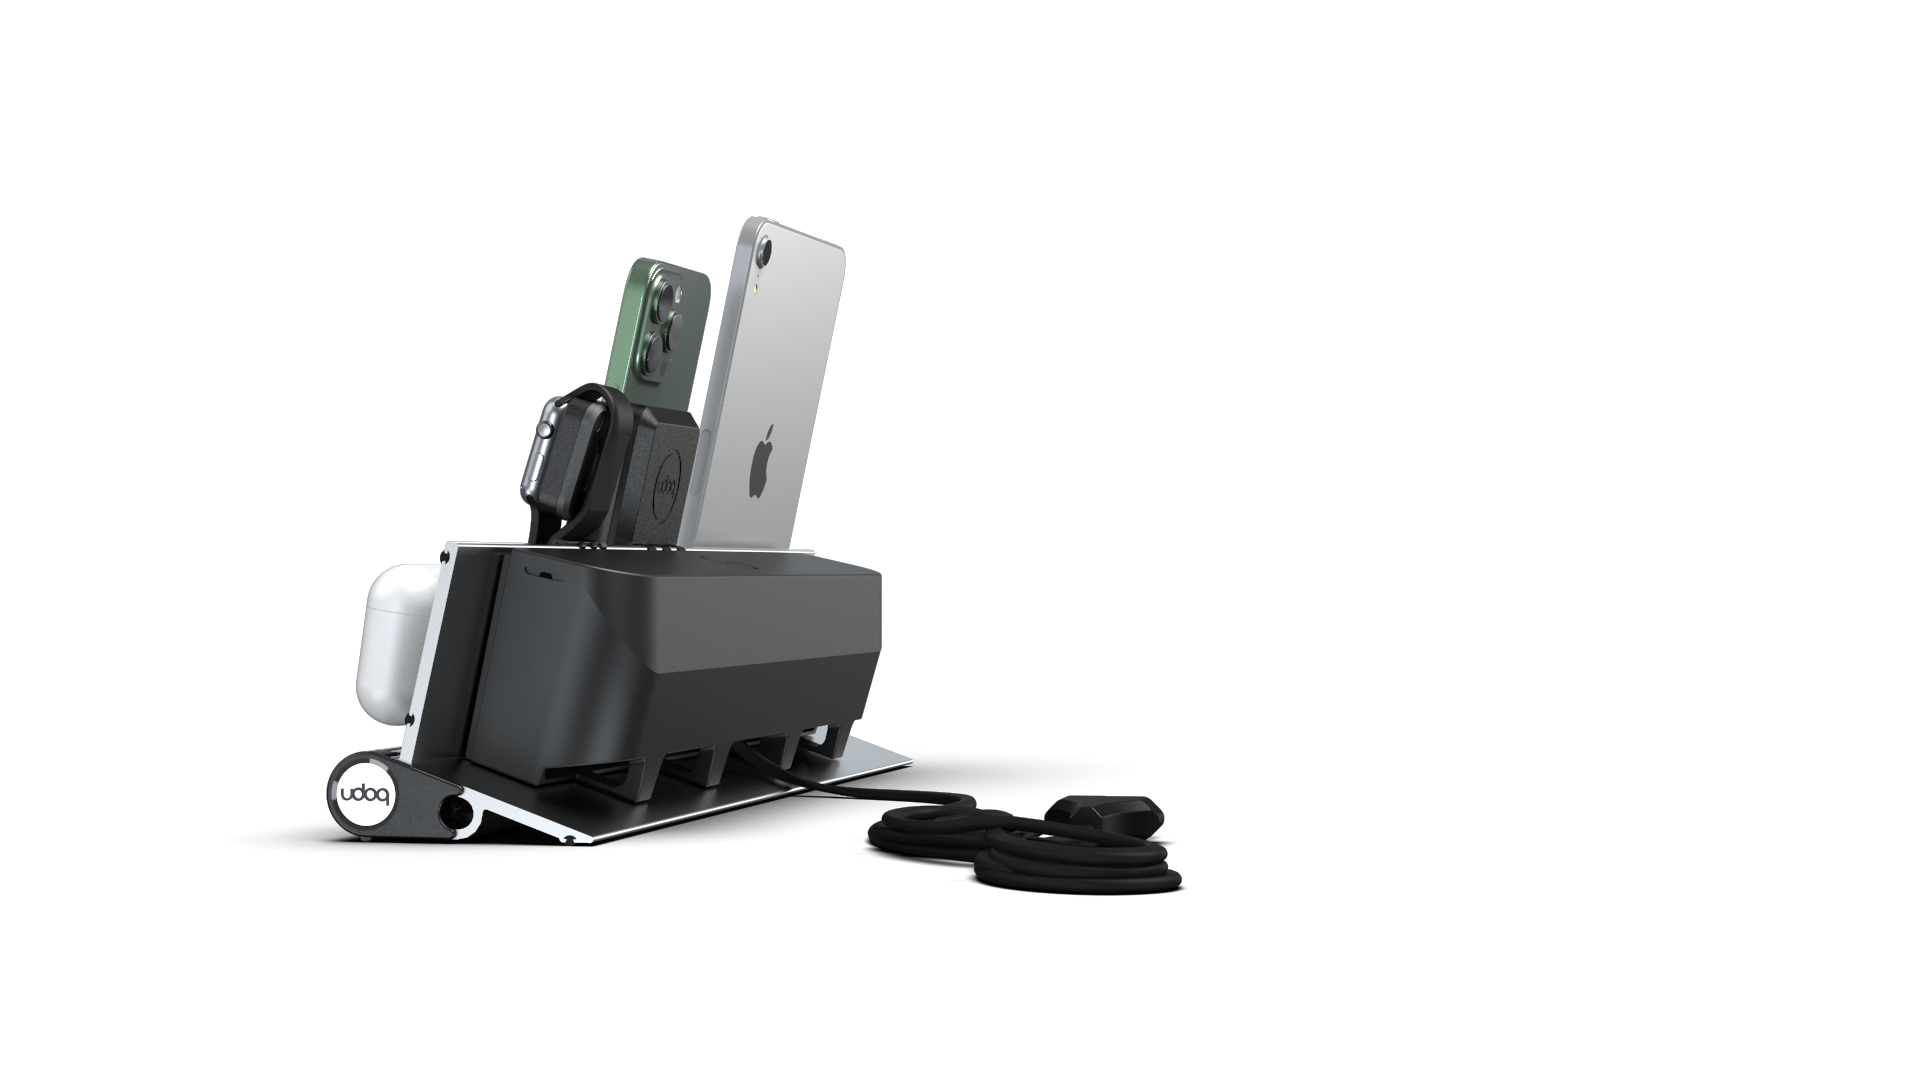 udoq Station de recharge multiple 400 en argent avec chargeur MagSafe et Power Delivery, Apple Watch adaptateur